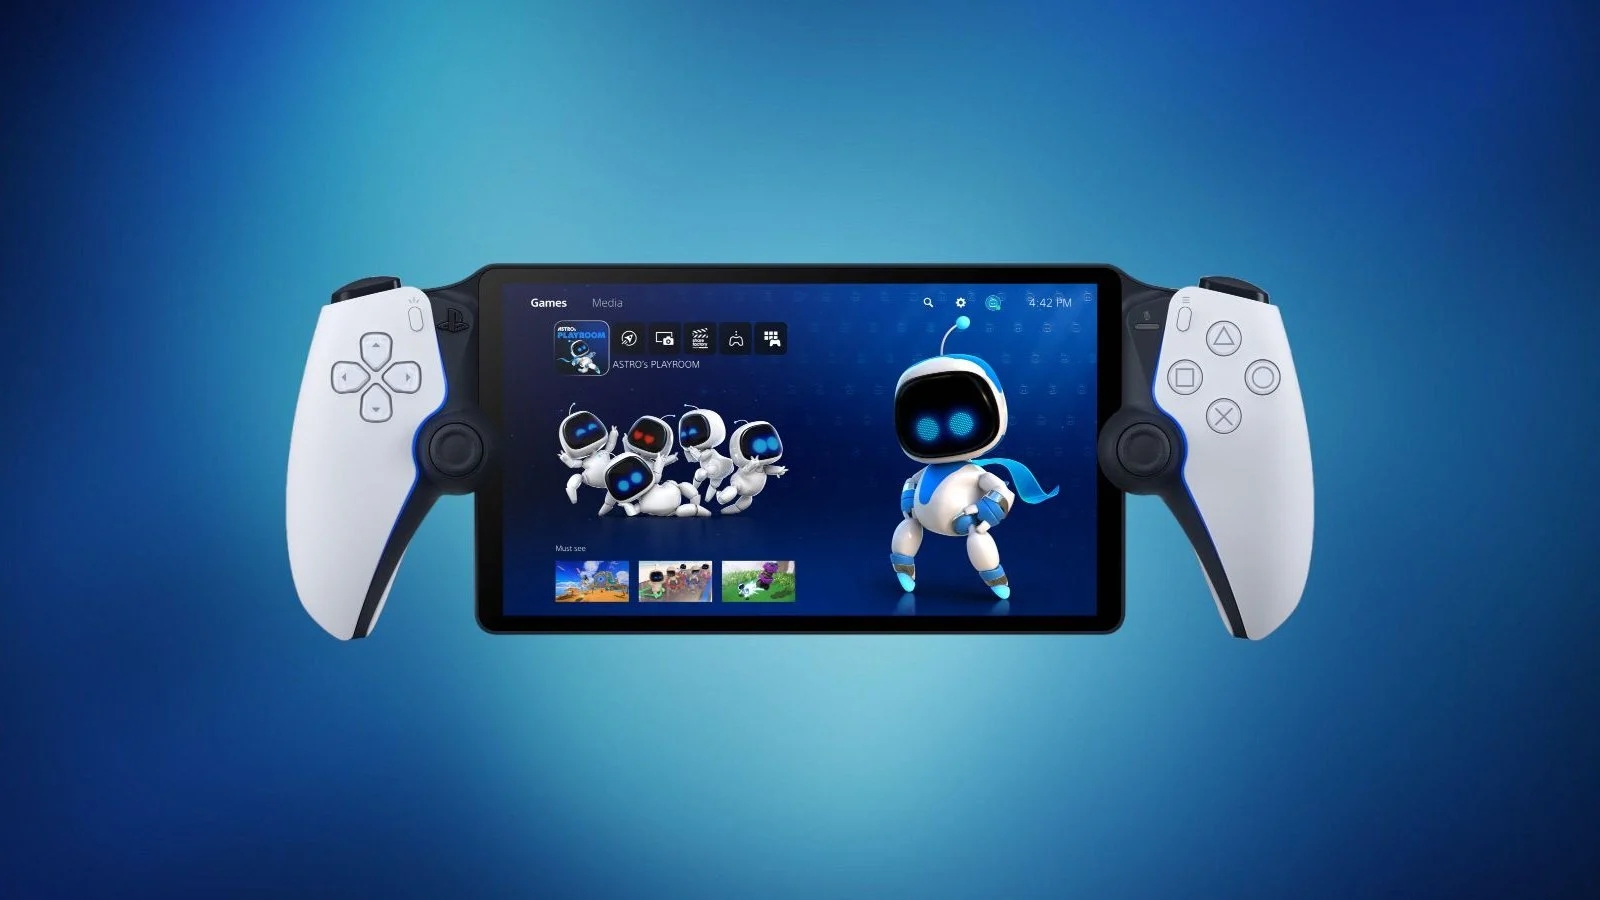 PlayStation Portal sarà valutata come una 'console' nei dati di vendita USA, su richiesta di Sony